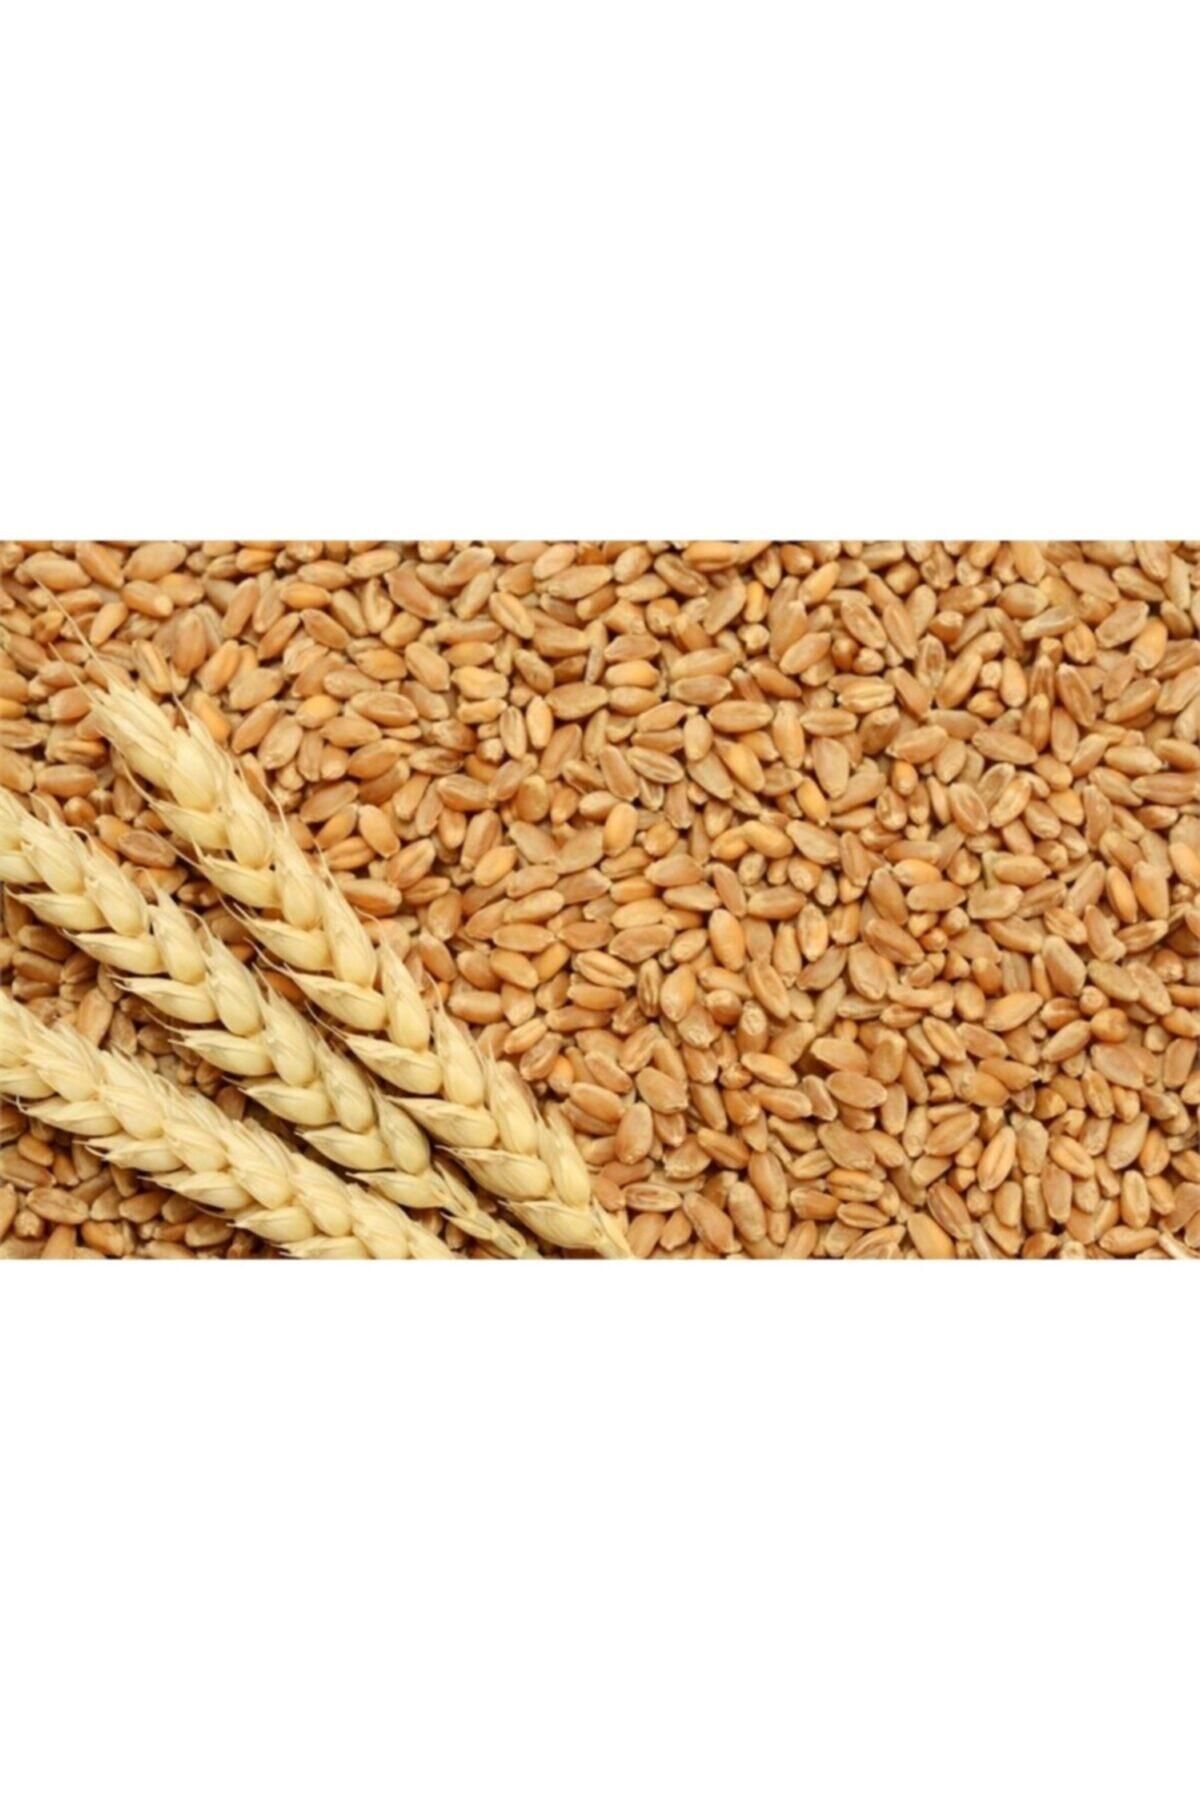 ME BUĞDAY İşlenmemiş Buğday 1 kg